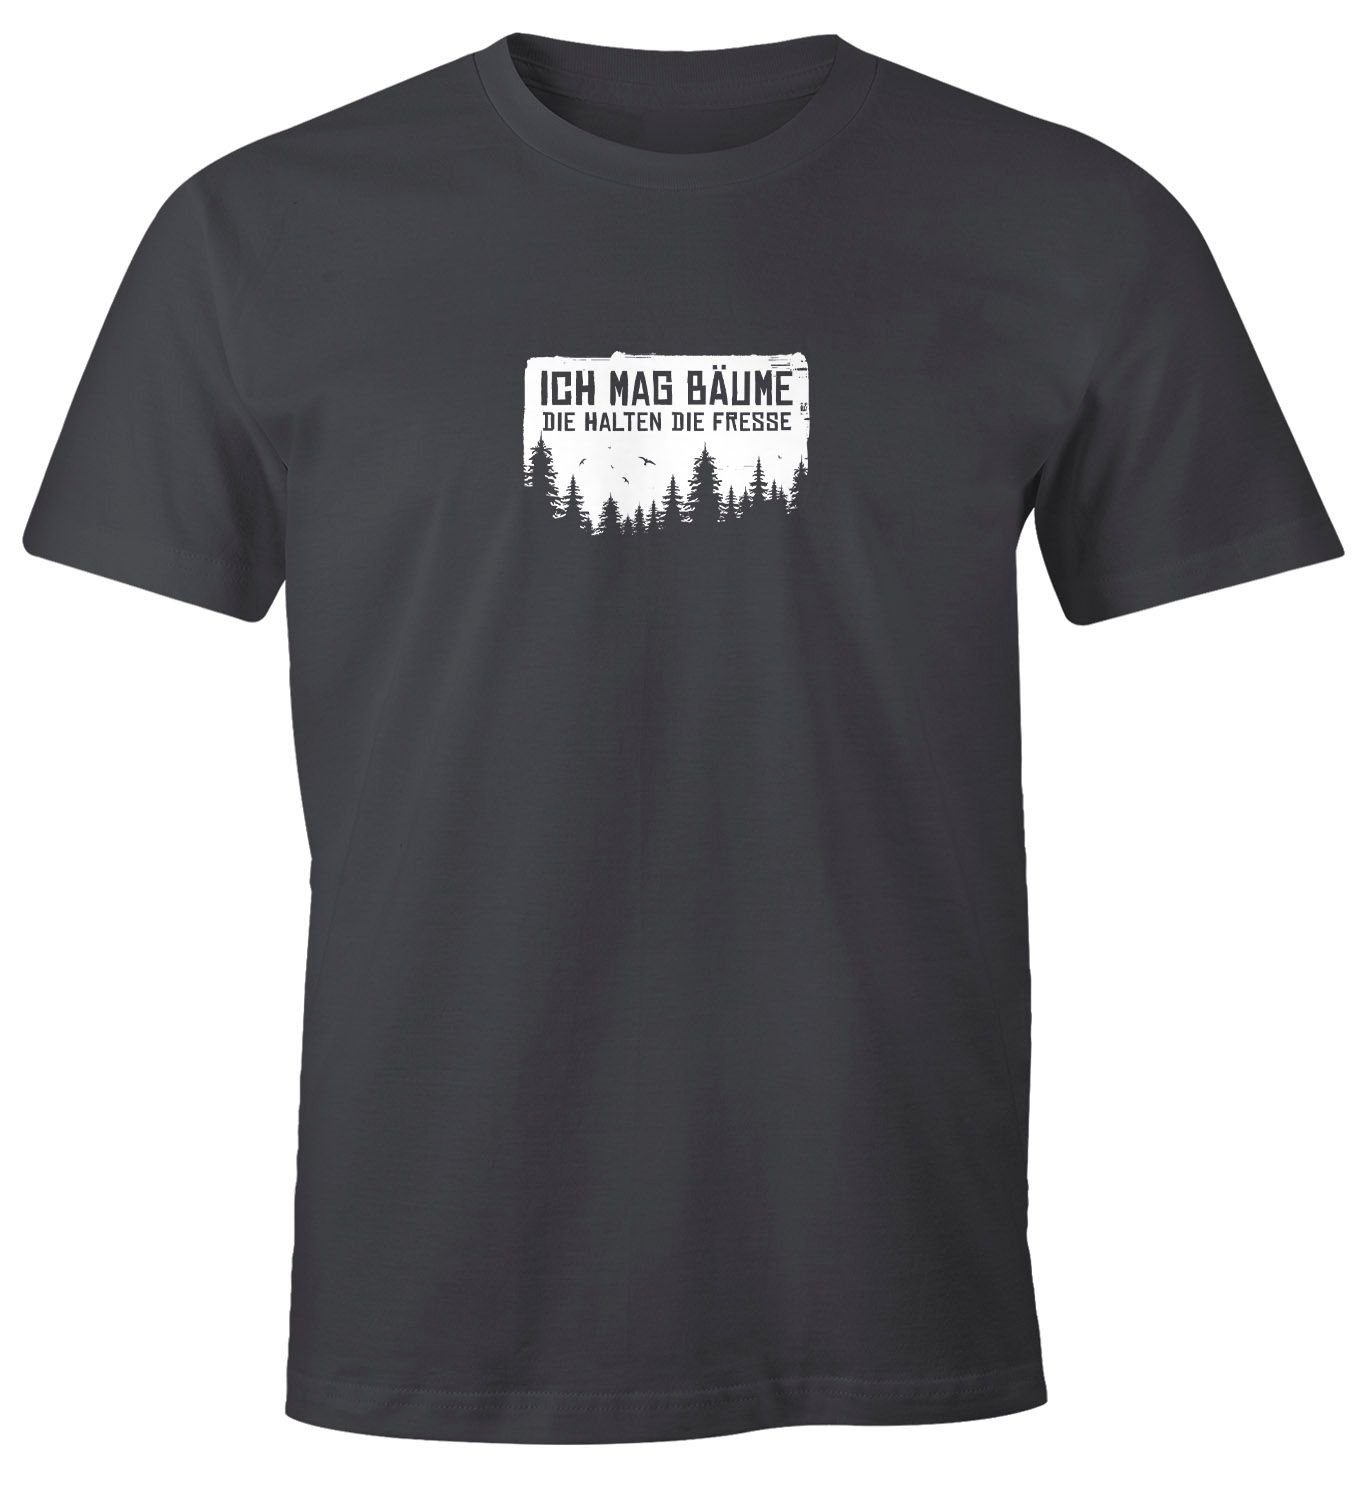 Honpo supergünstiger Versandhandel! MoonWorks Print-Shirt Sarkasmus anthrazit mit Spruch lustig Wald O mit T-Shirt Print Bäume Herren Ironie Ich mag